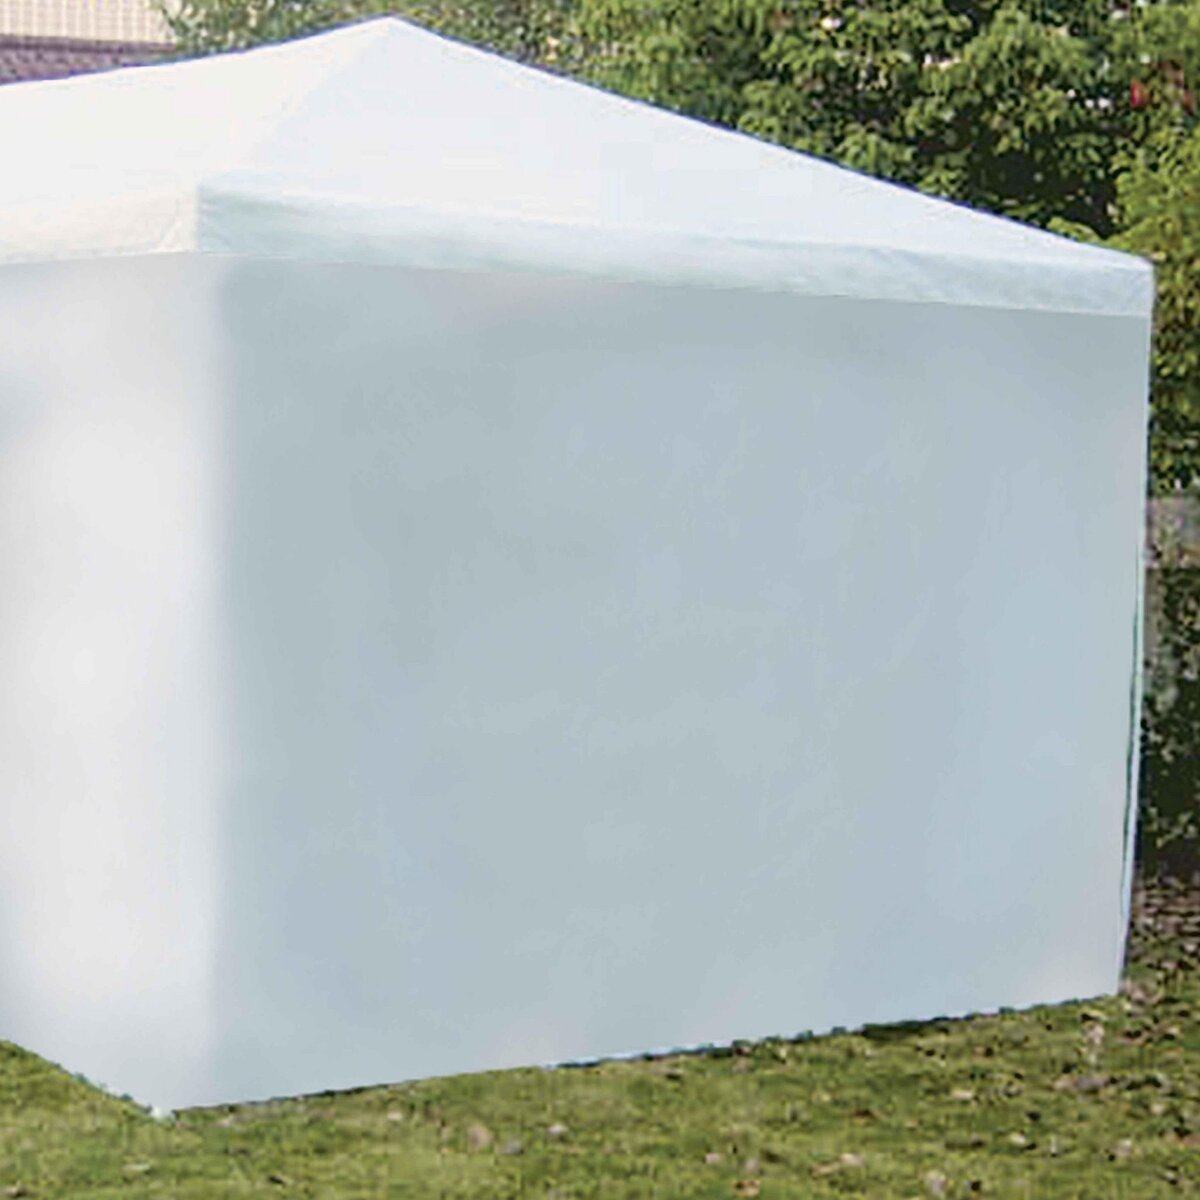  Coté de tente mur blanc 2.9m x h 1,90m